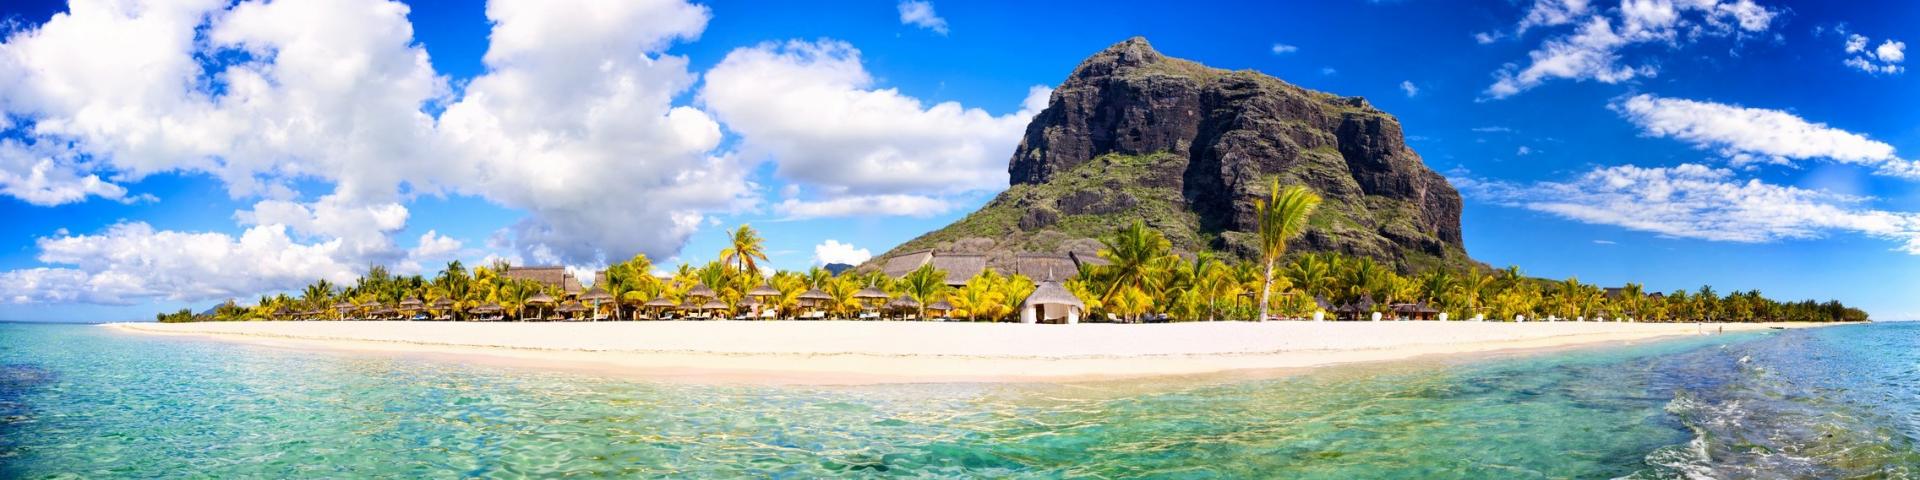 Mauritius w promocyjnych cenach